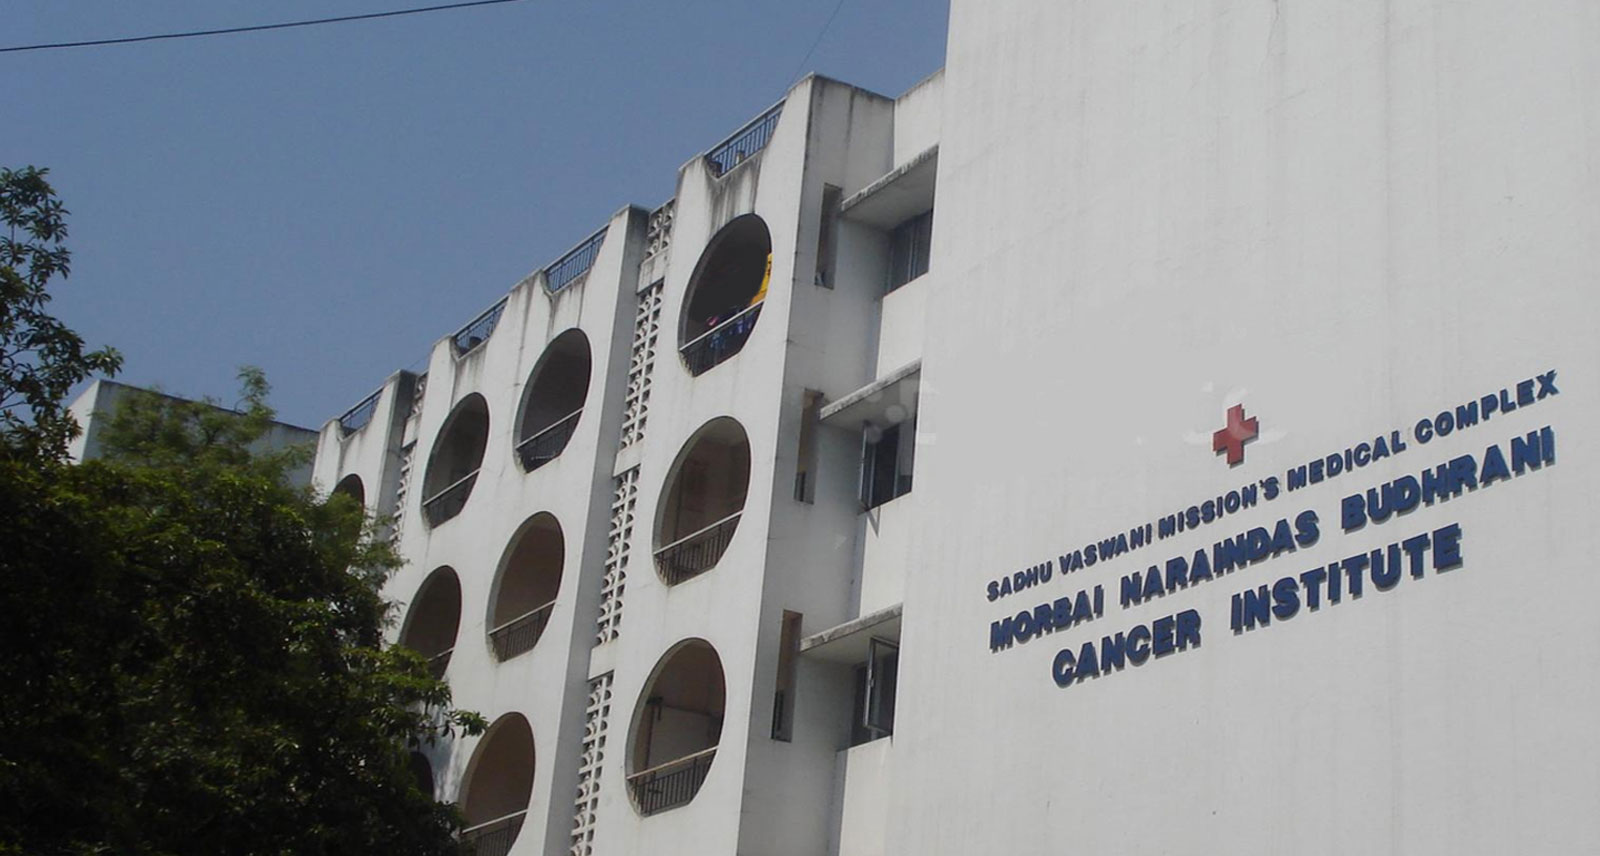 M. N. Budhrani Cancer Institute